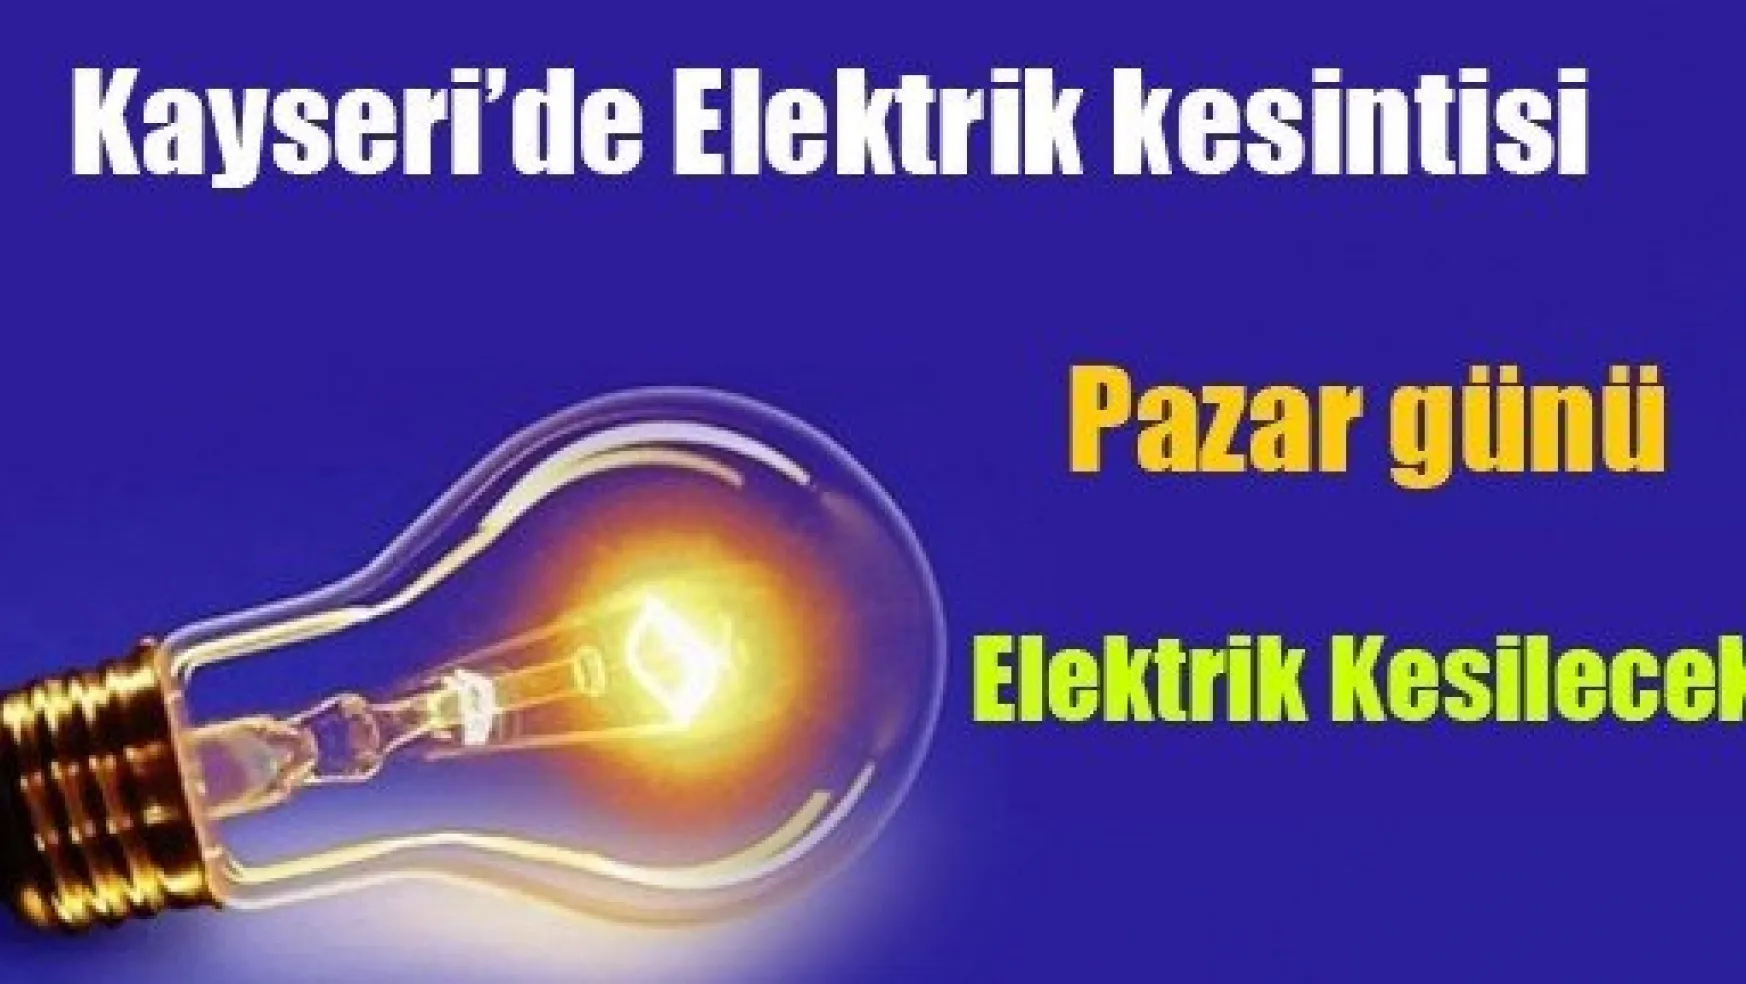 Kayseri'de Elektrik Kesintisi